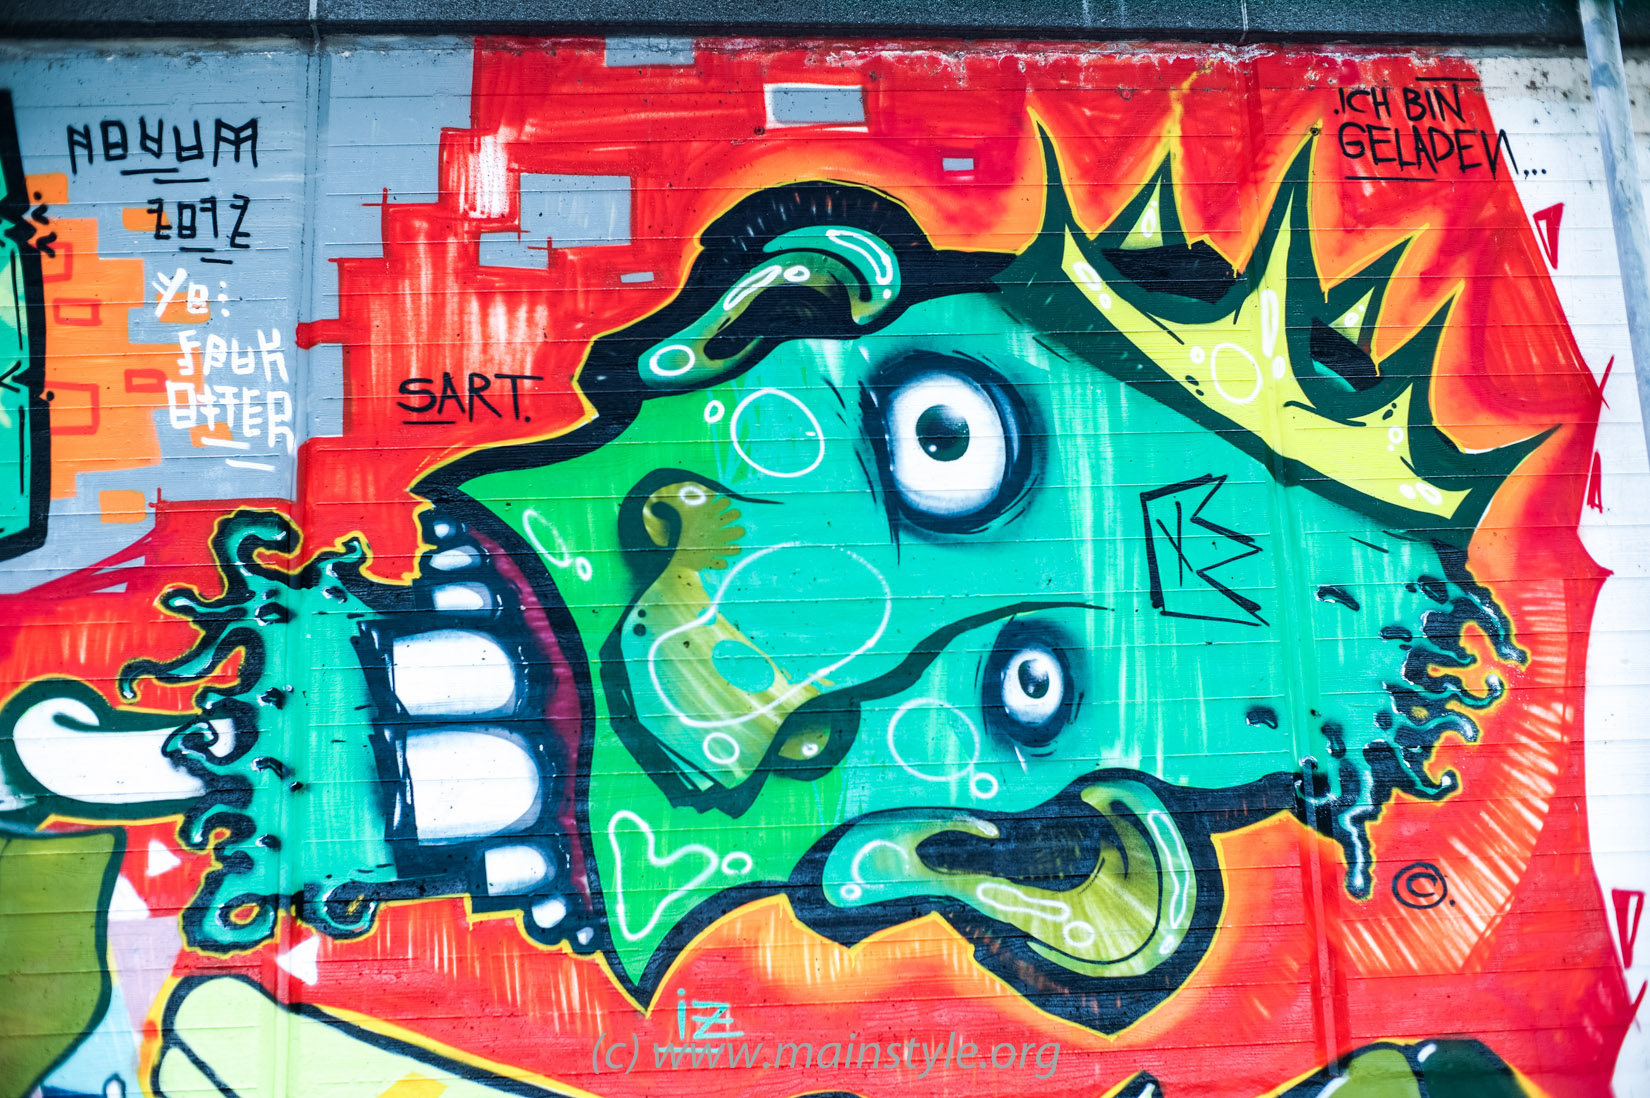 Frankfurt-Höchst_Graffiti_Süwag-Wall_2012 (10 von 35)